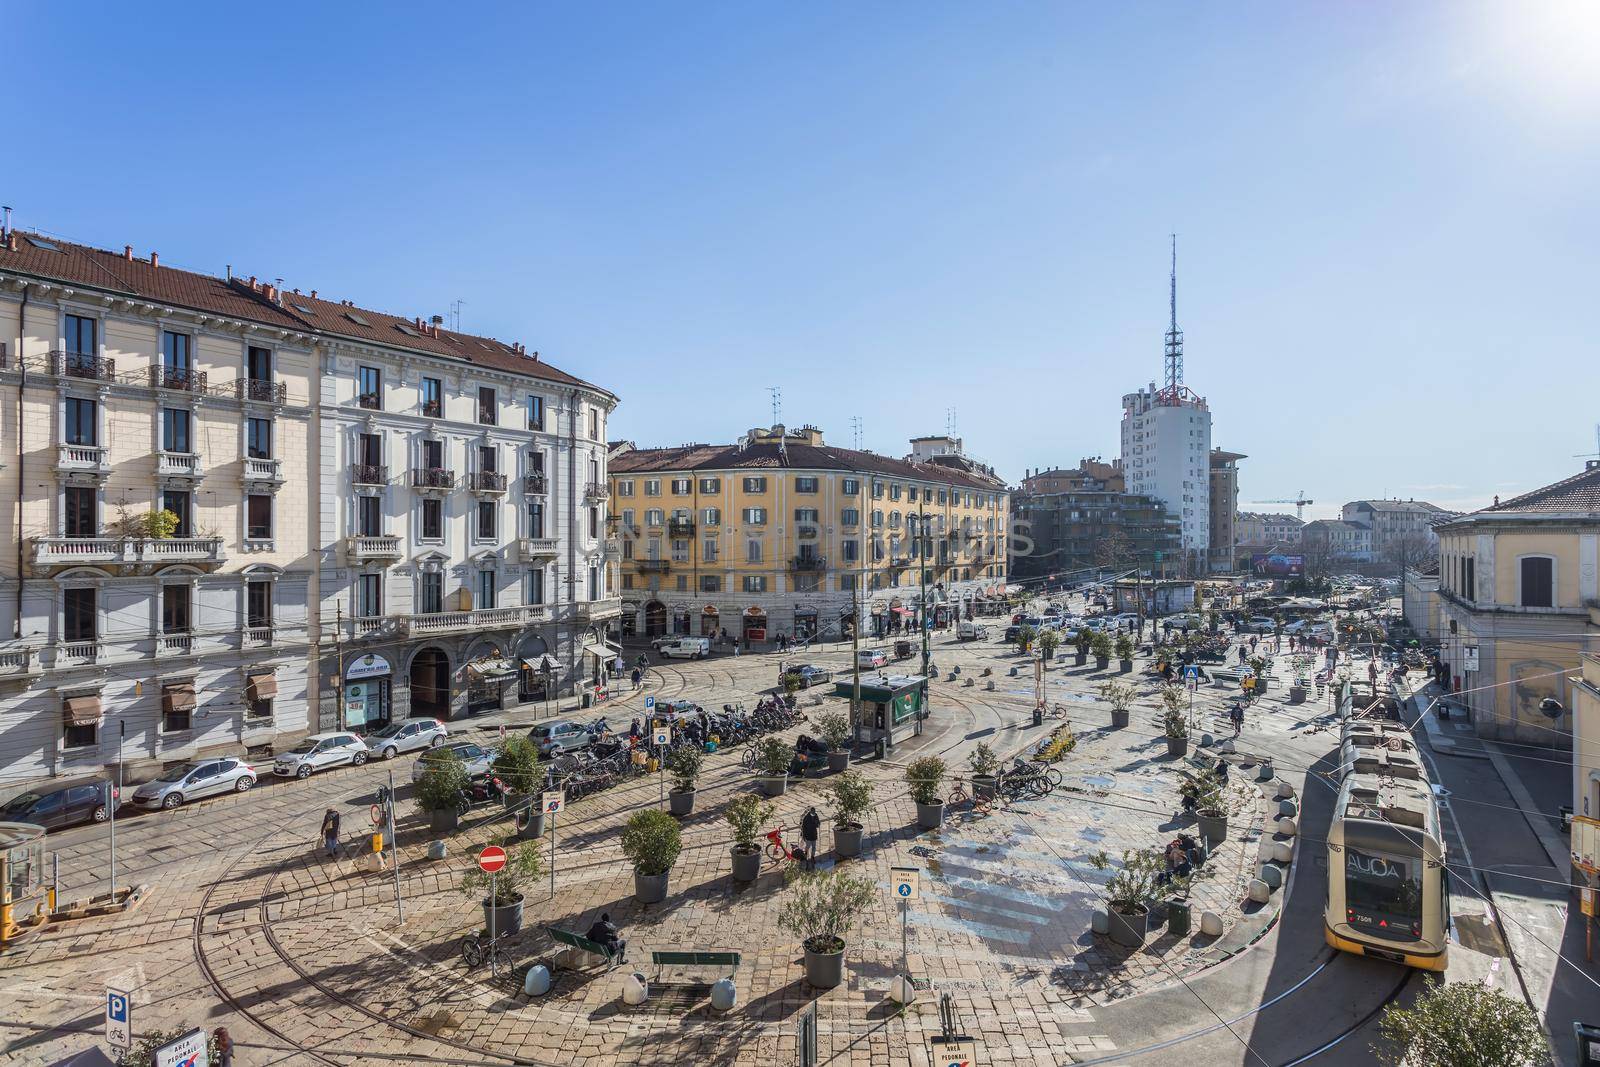 Porta Genova station in Milan by germanopoli